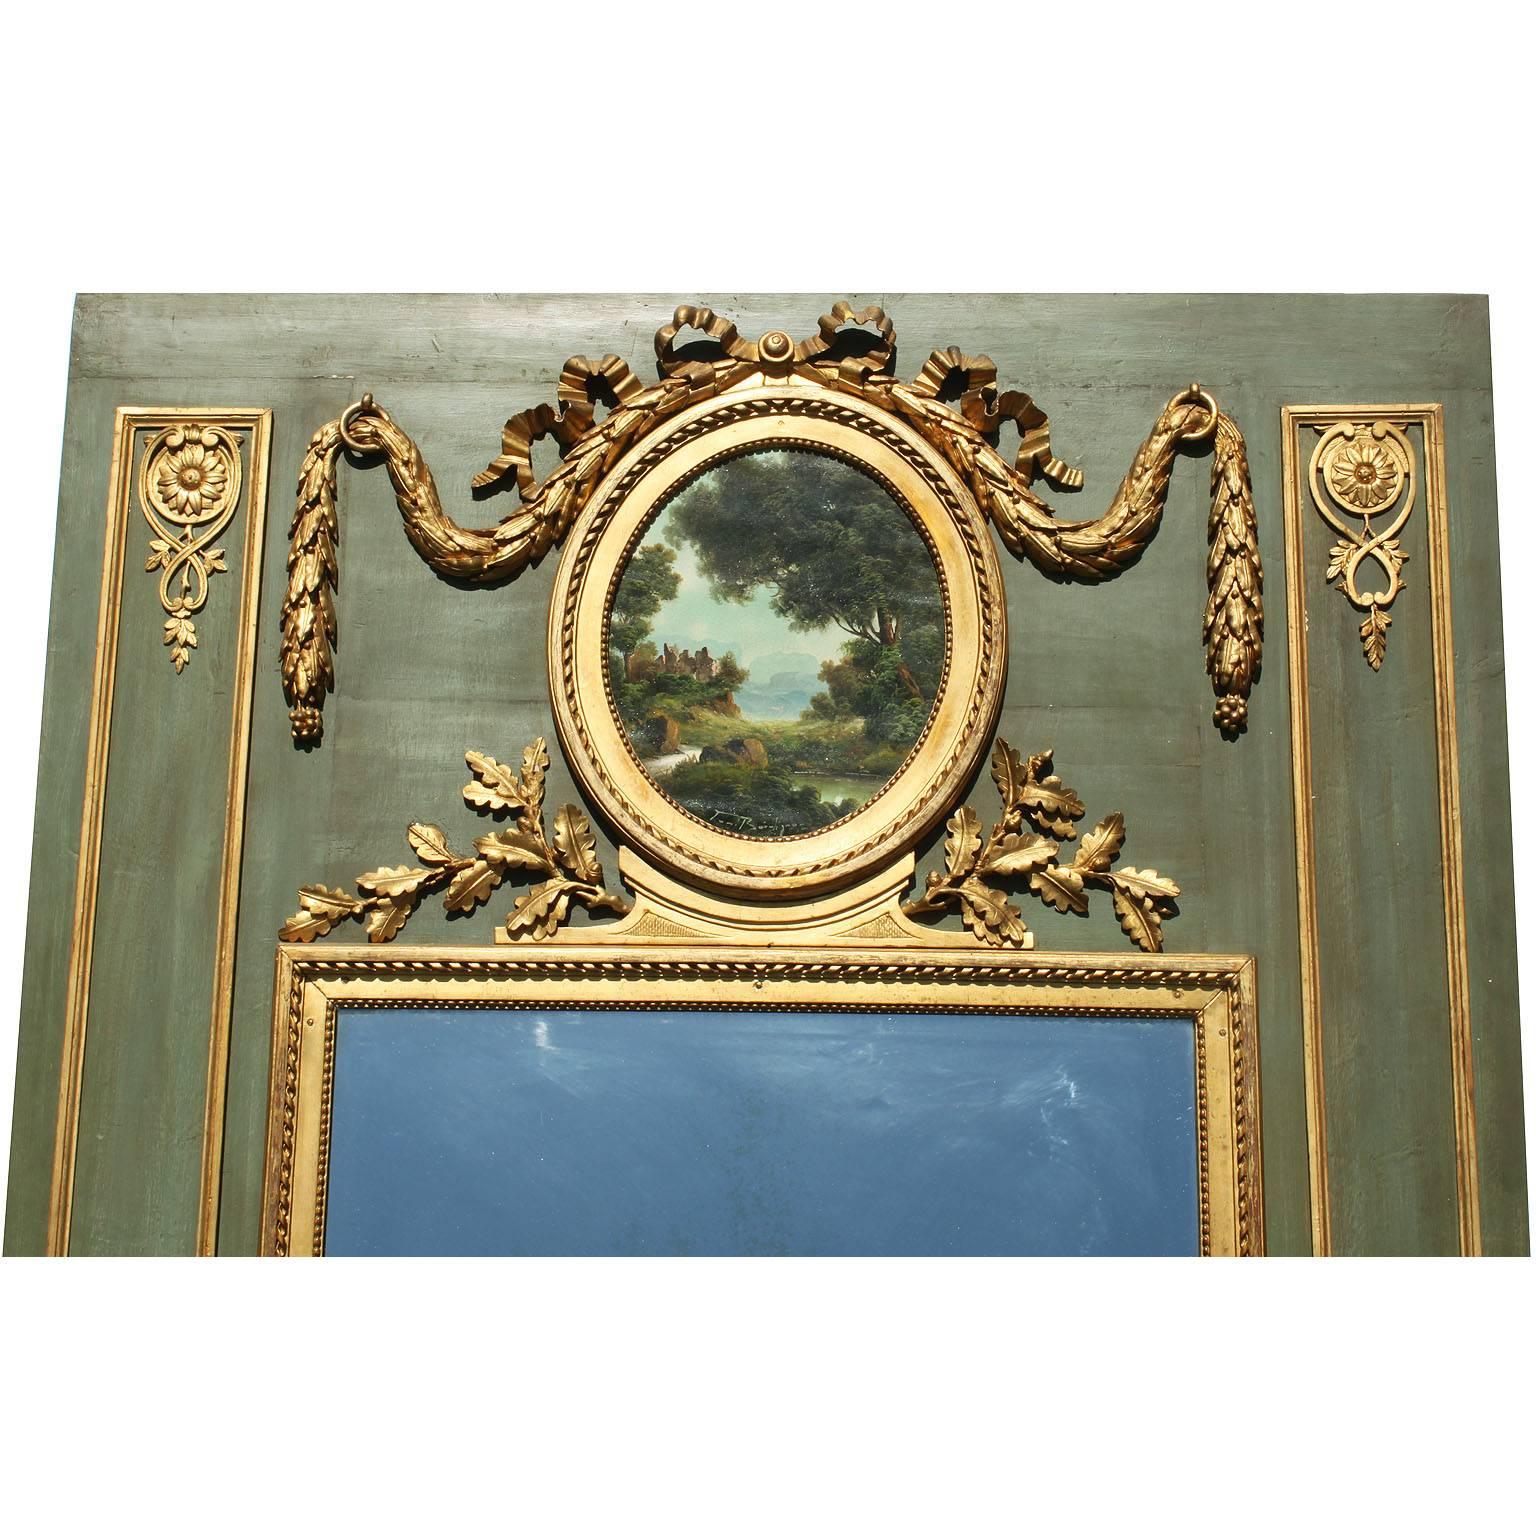 Cadre de miroir à trumeau de style Louis XVI du XIXe siècle, peint en vert et sculpté en bois doré à la feuille. Le cadre allongé surmonté de couronnes, feuilles, urnes, boucliers, arcs, rubans et moulures sculptés en bois doré, centré d'une huile